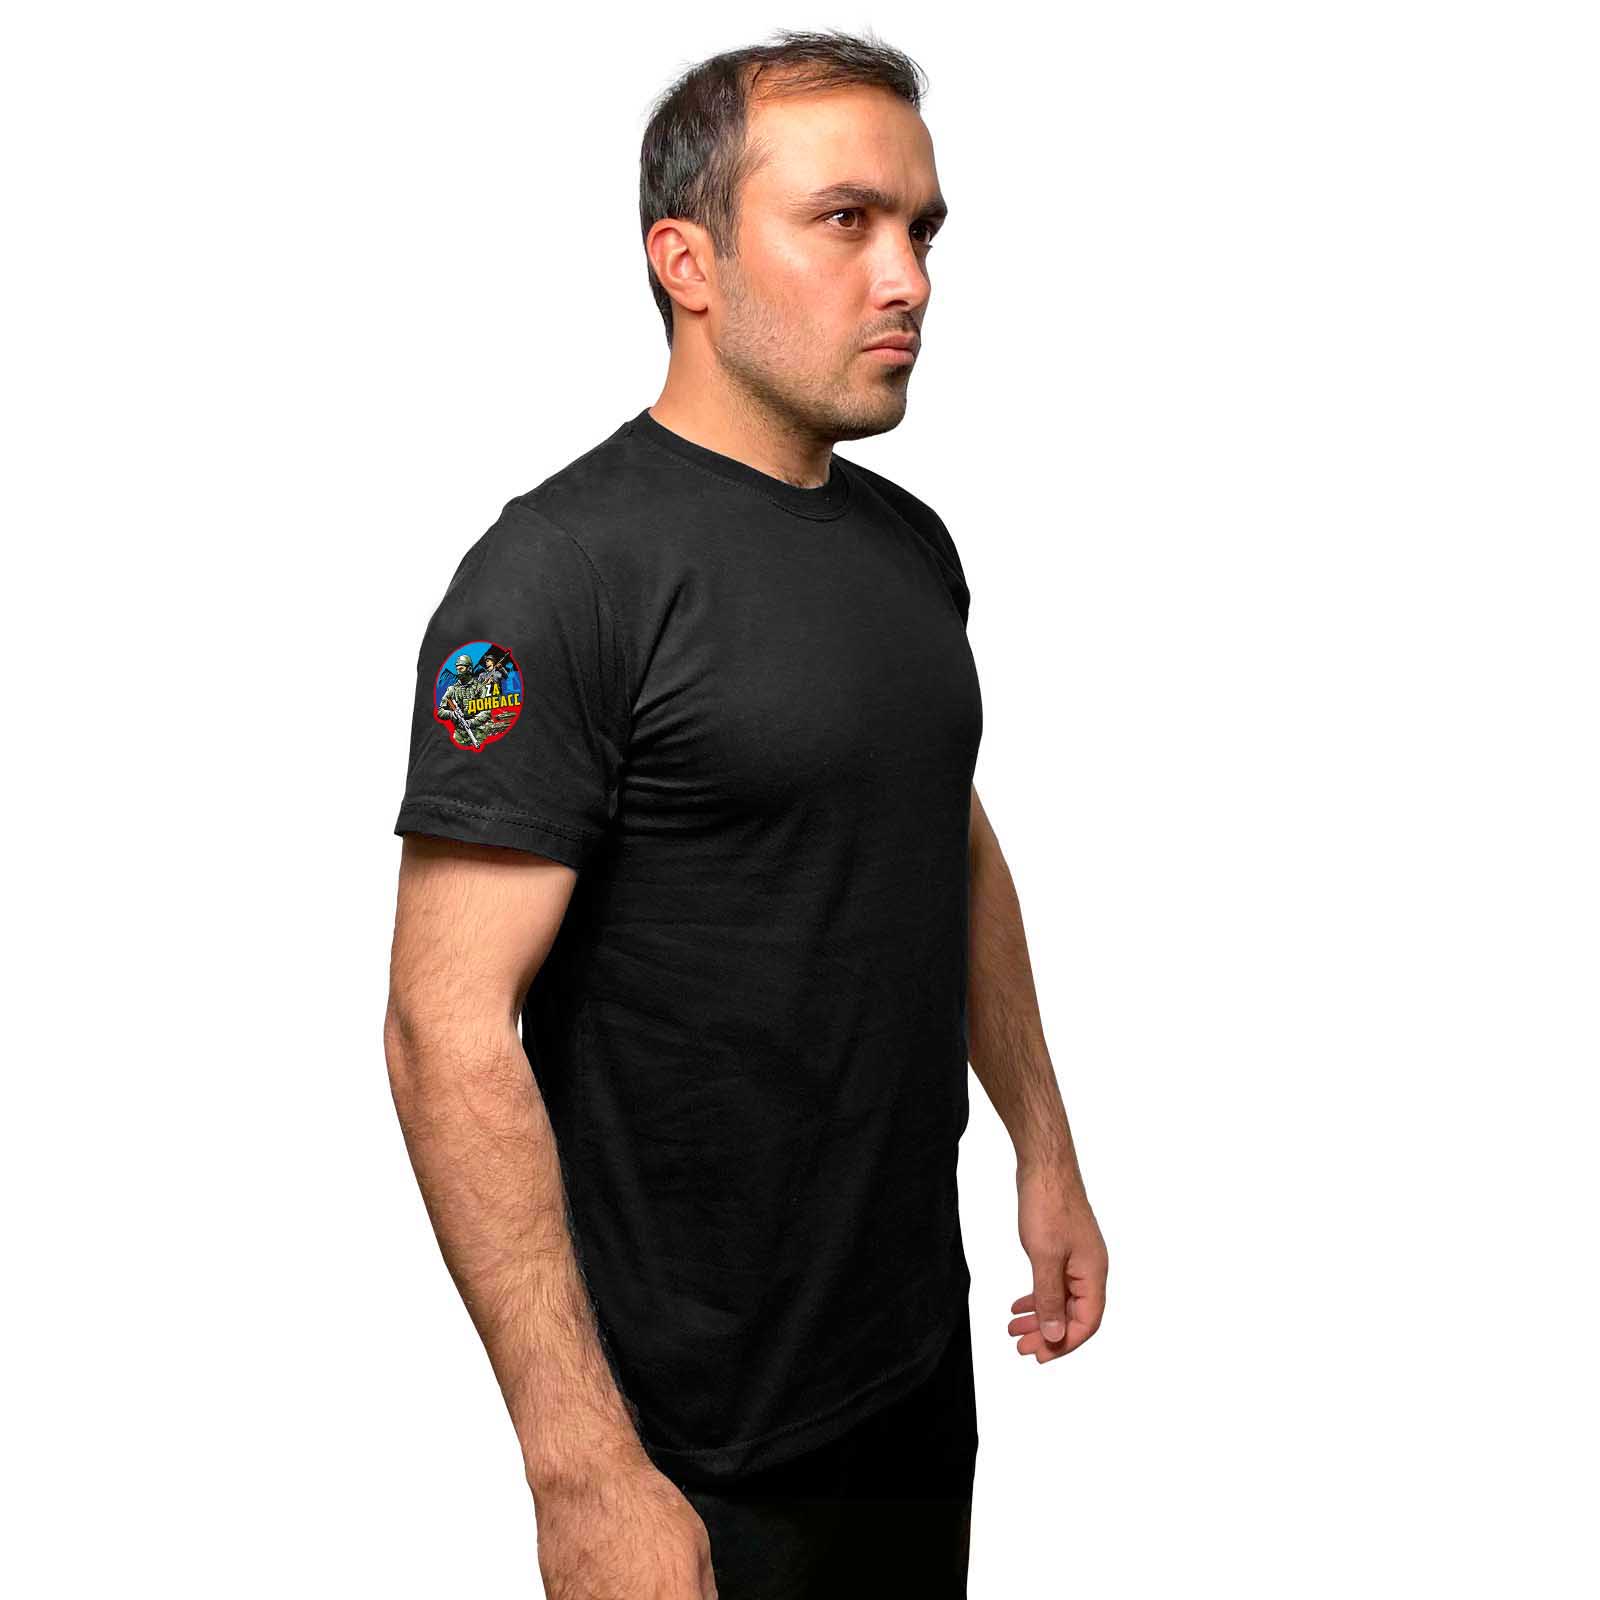 Чёрная футболка с термотрансфером "Zа Донбасс" на рукаве